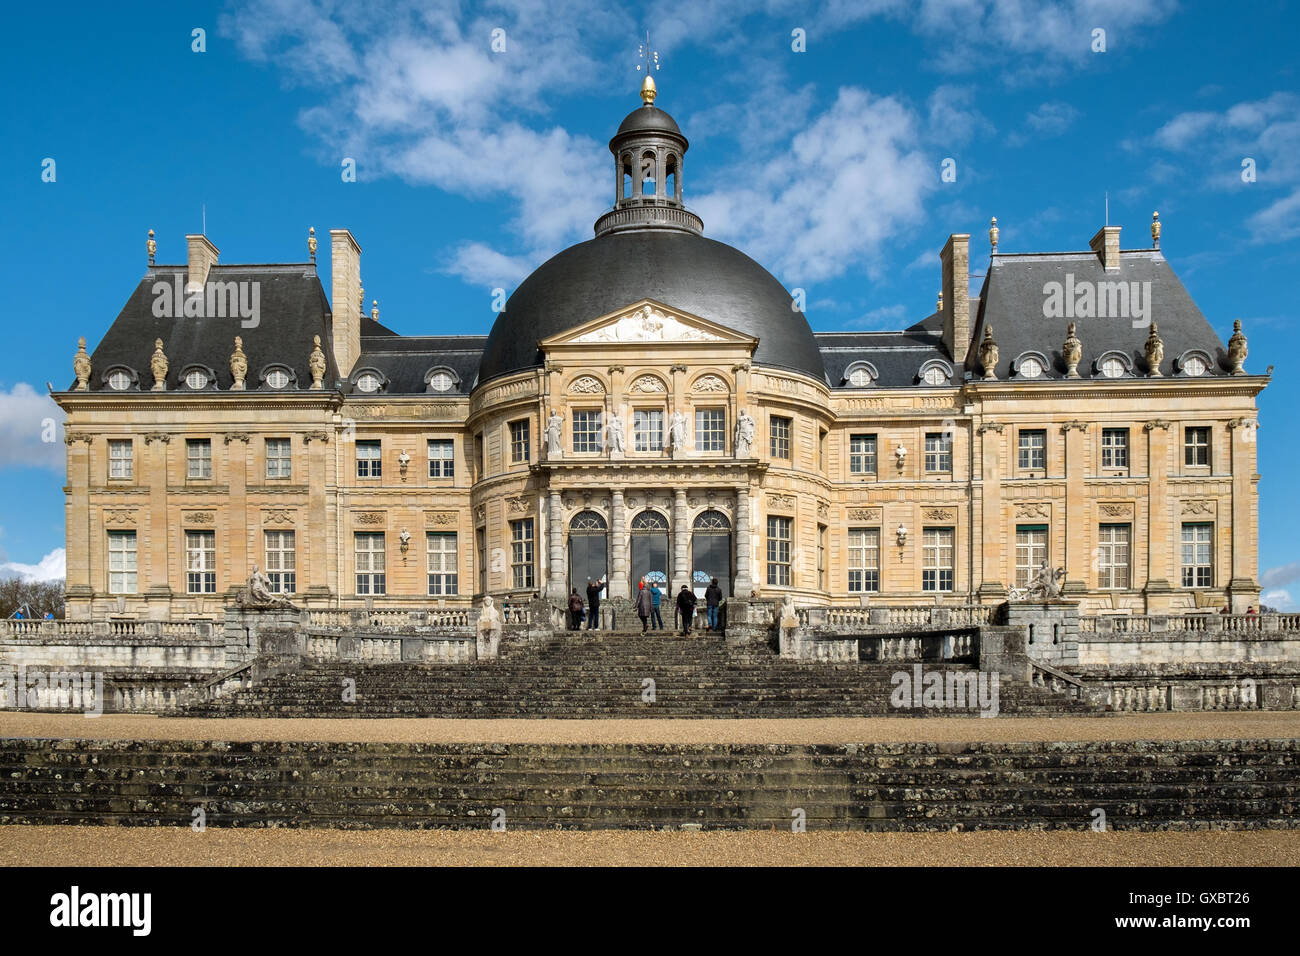 The Chateau De Vaux Le Vicomte, in Maincy, France Stock Photo